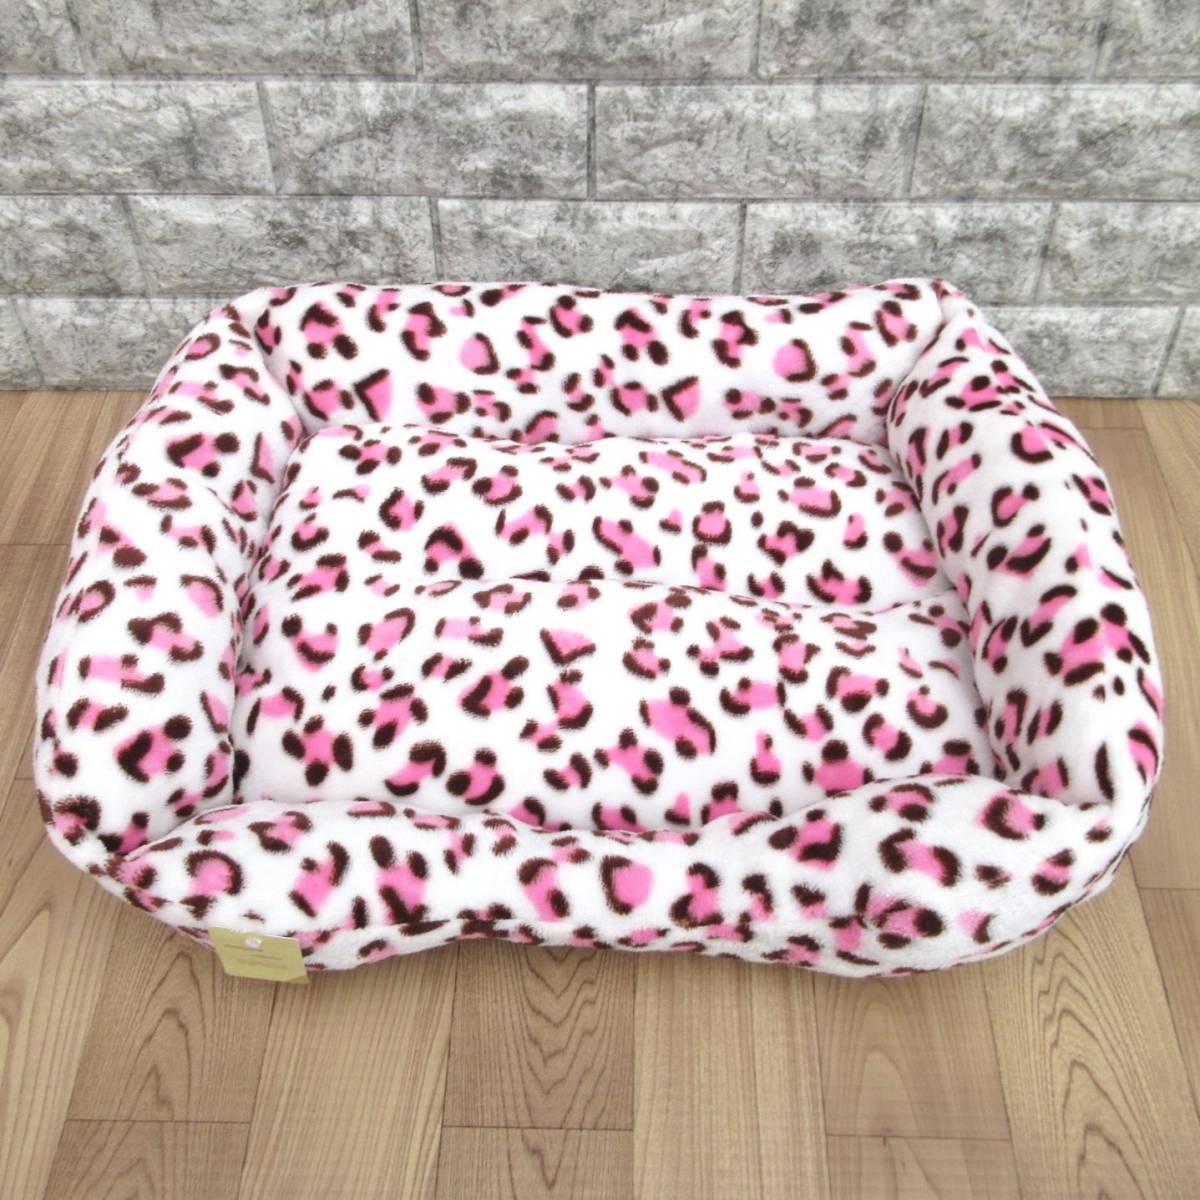  цена снижена! новый товар фланель квадратное домашнее животное bed * домашнее животное диван M размер леопардовая расцветка розовый коврик круг мытье мягкость теплый 